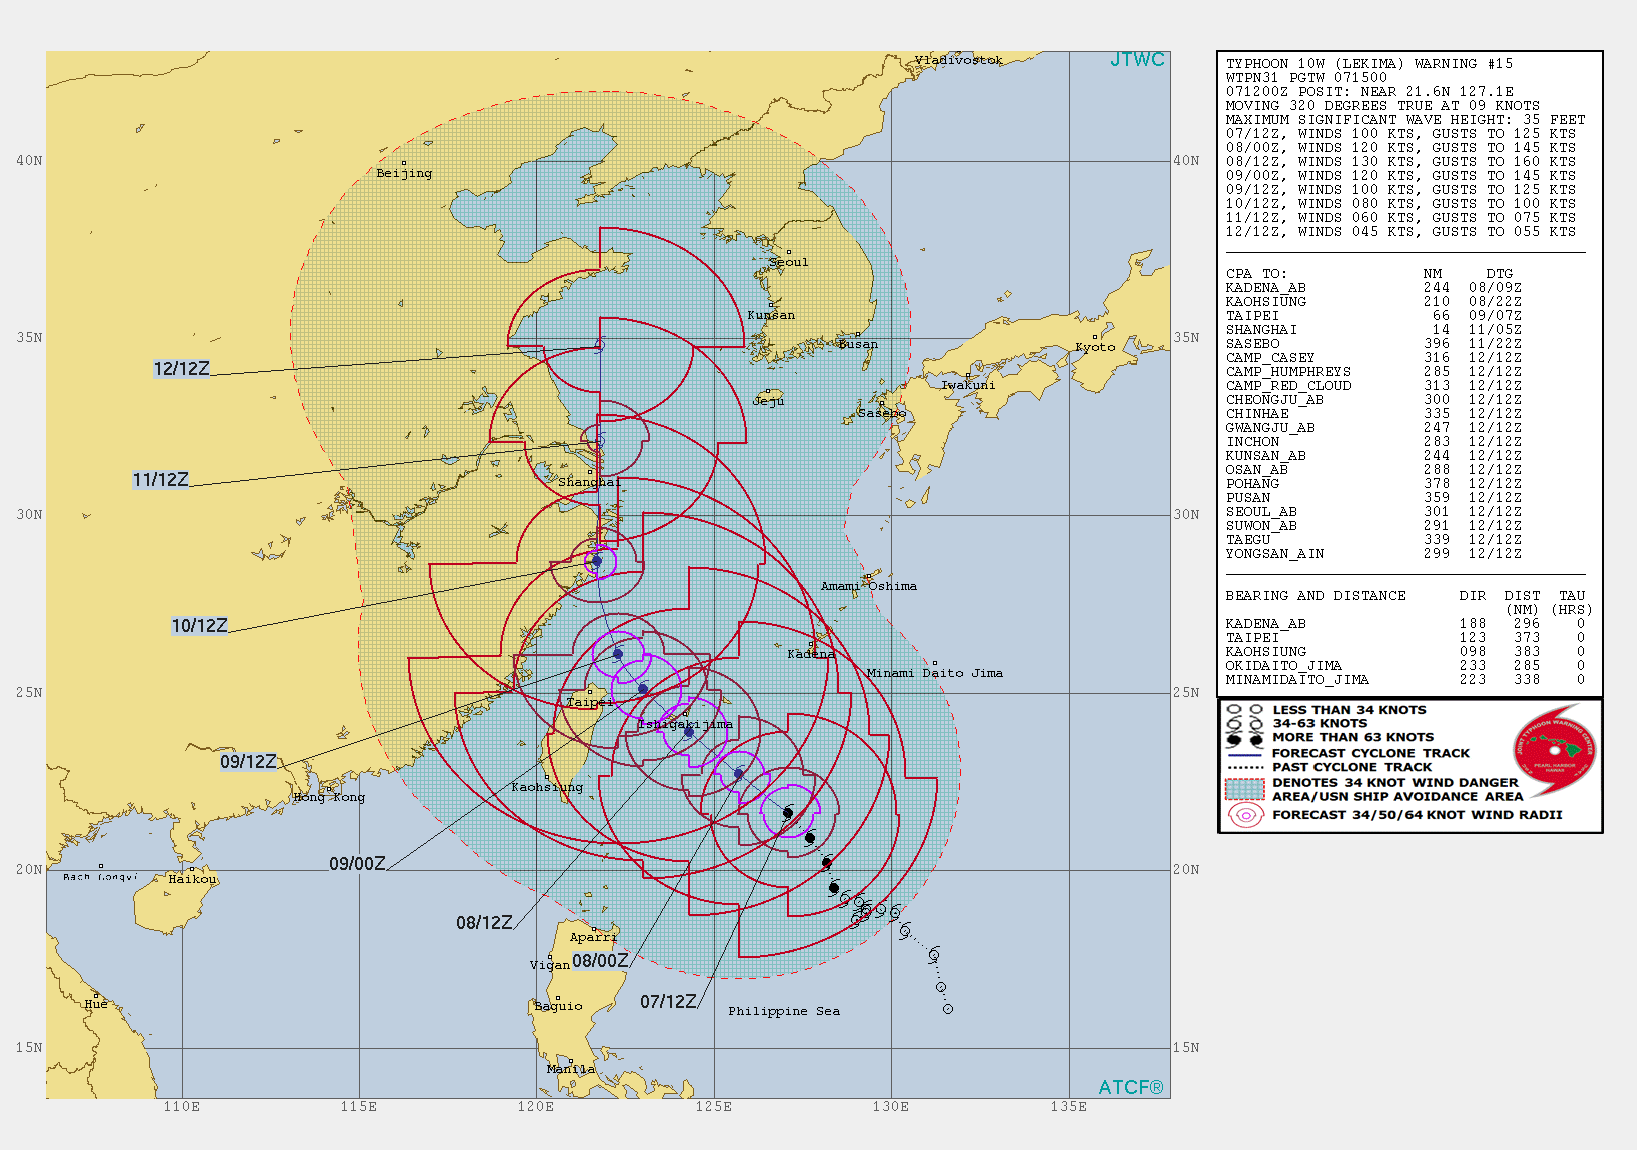 10W: WARNING 15/JTWC